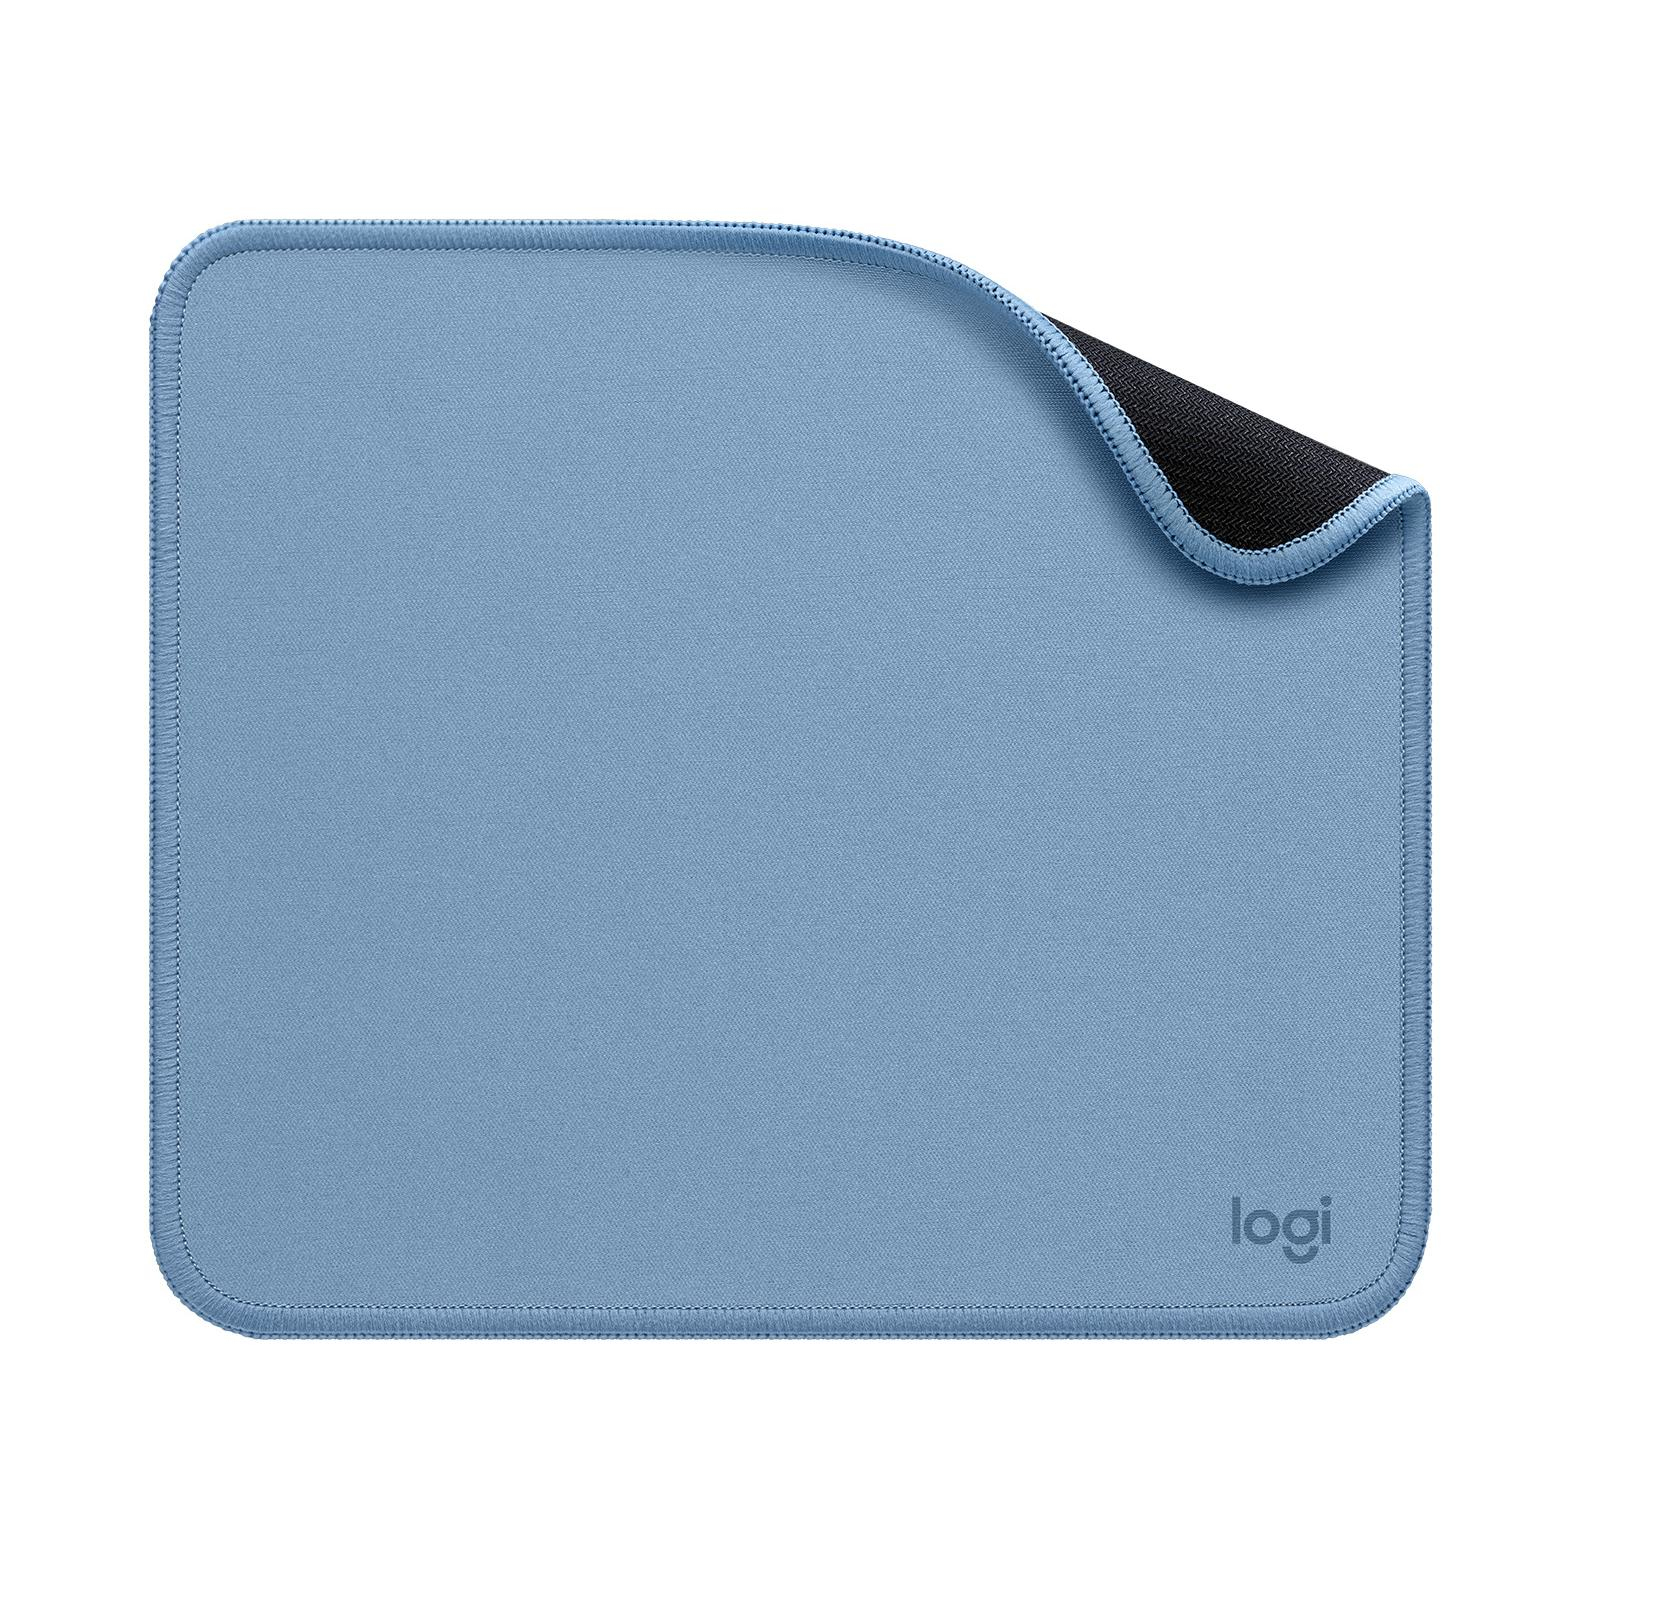 Logitech Mouse Pad - Studio Series, Soft Mouse Pad